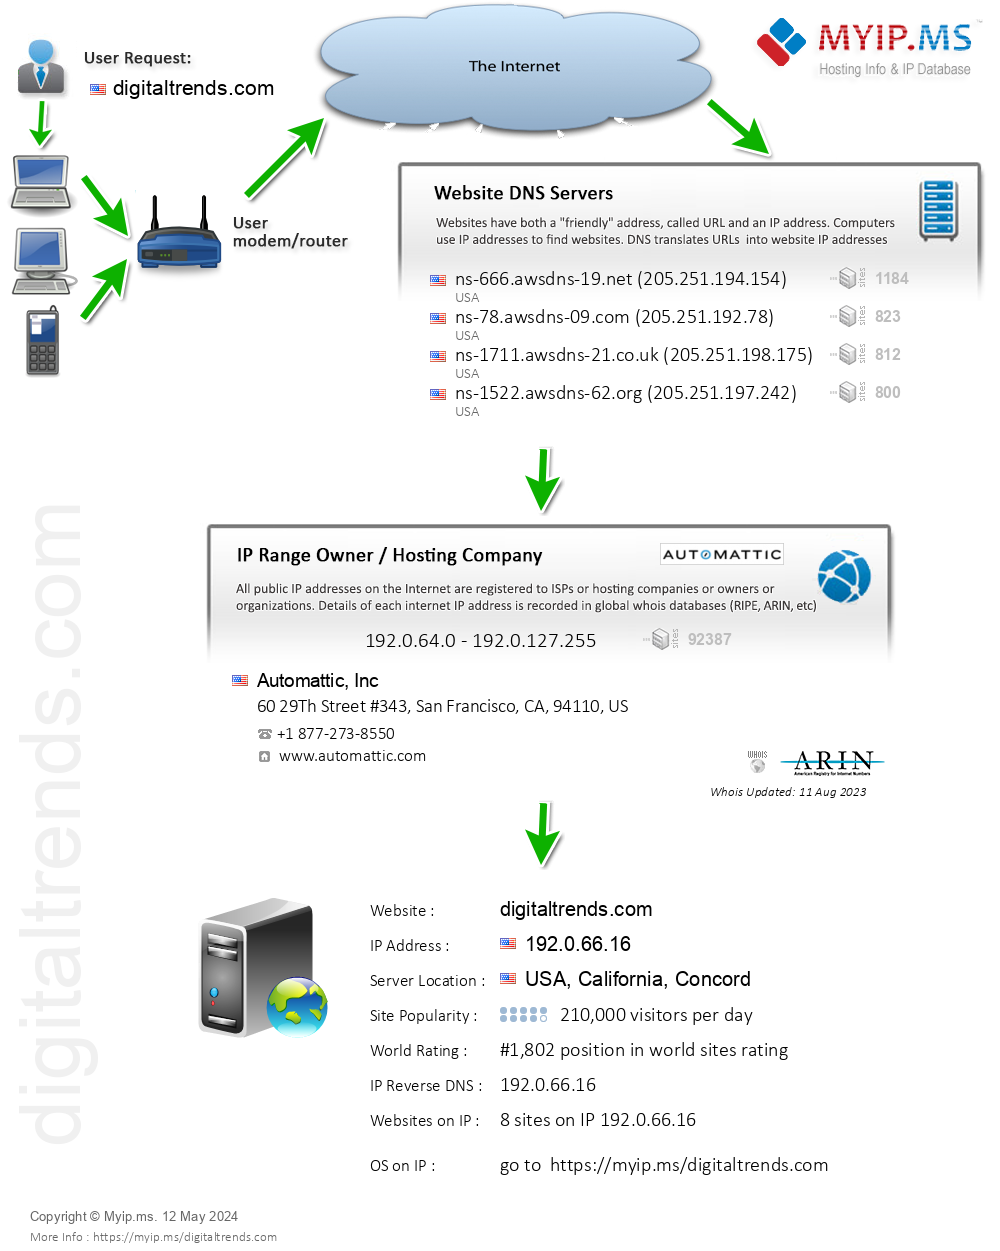 Digitaltrends.com - Website Hosting Visual IP Diagram